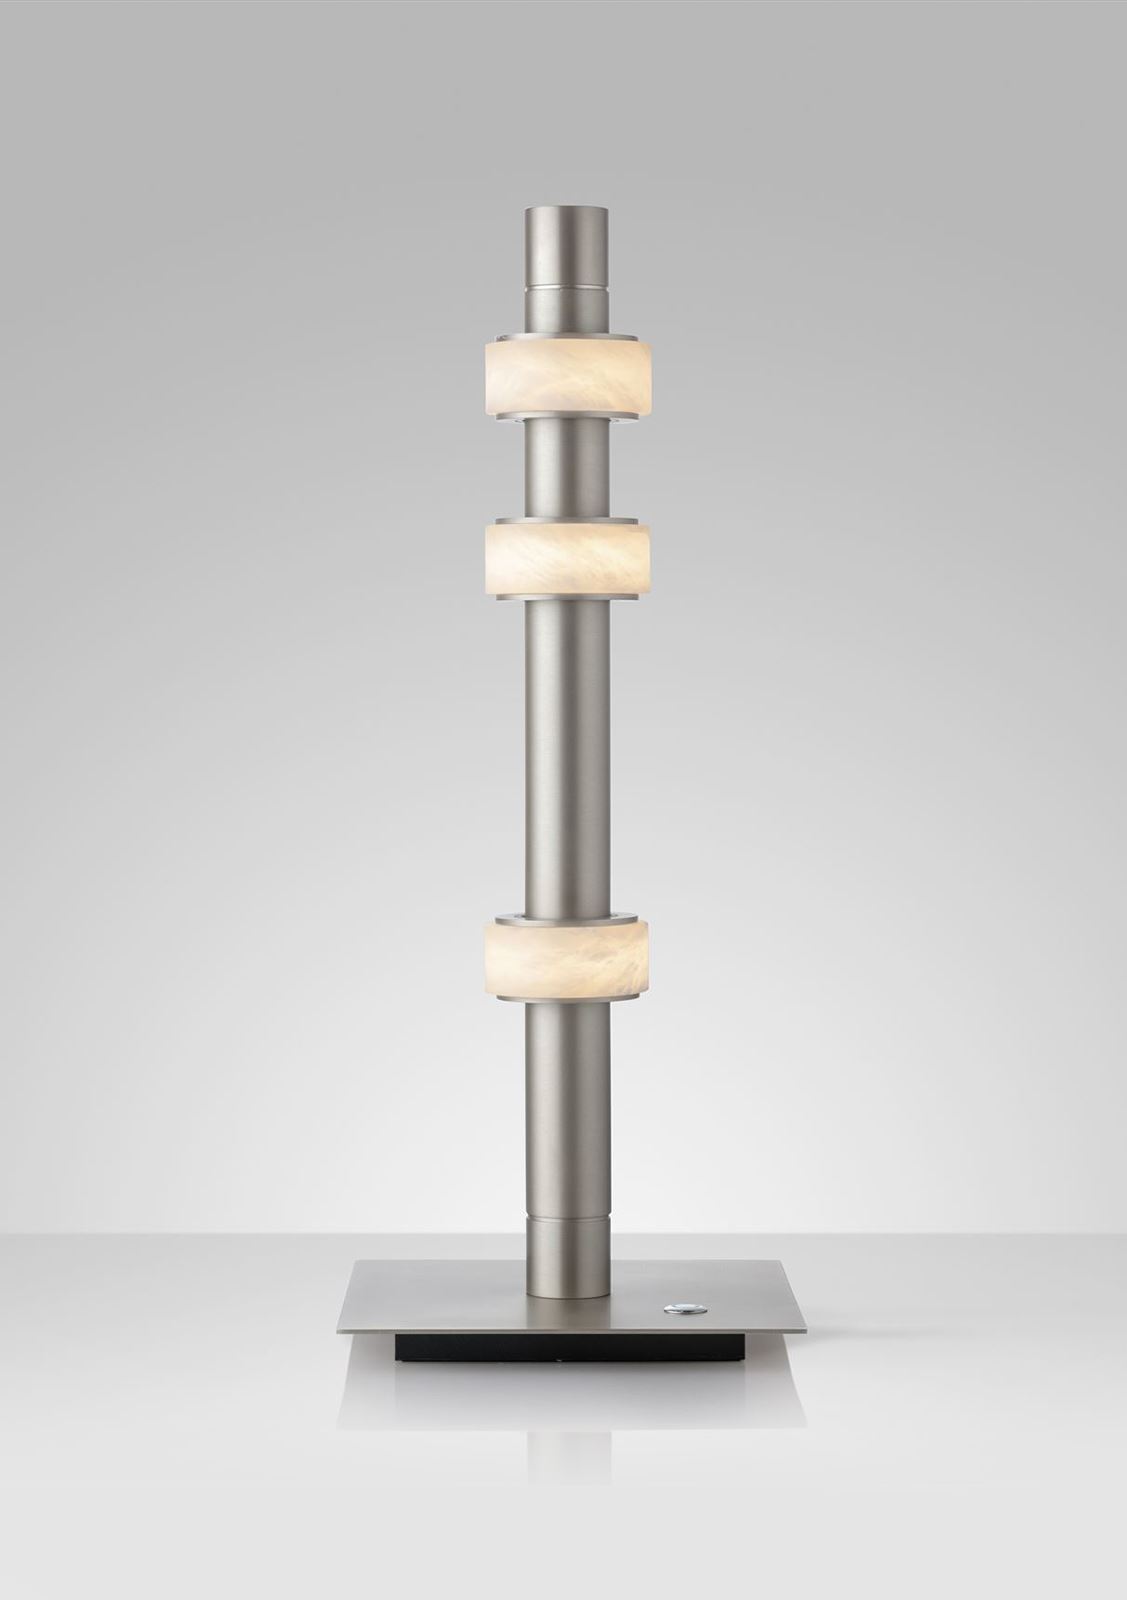 גופי תאורה בקטגוריית: מנורות שולחן  ,שם המוצר: LIMITLESS